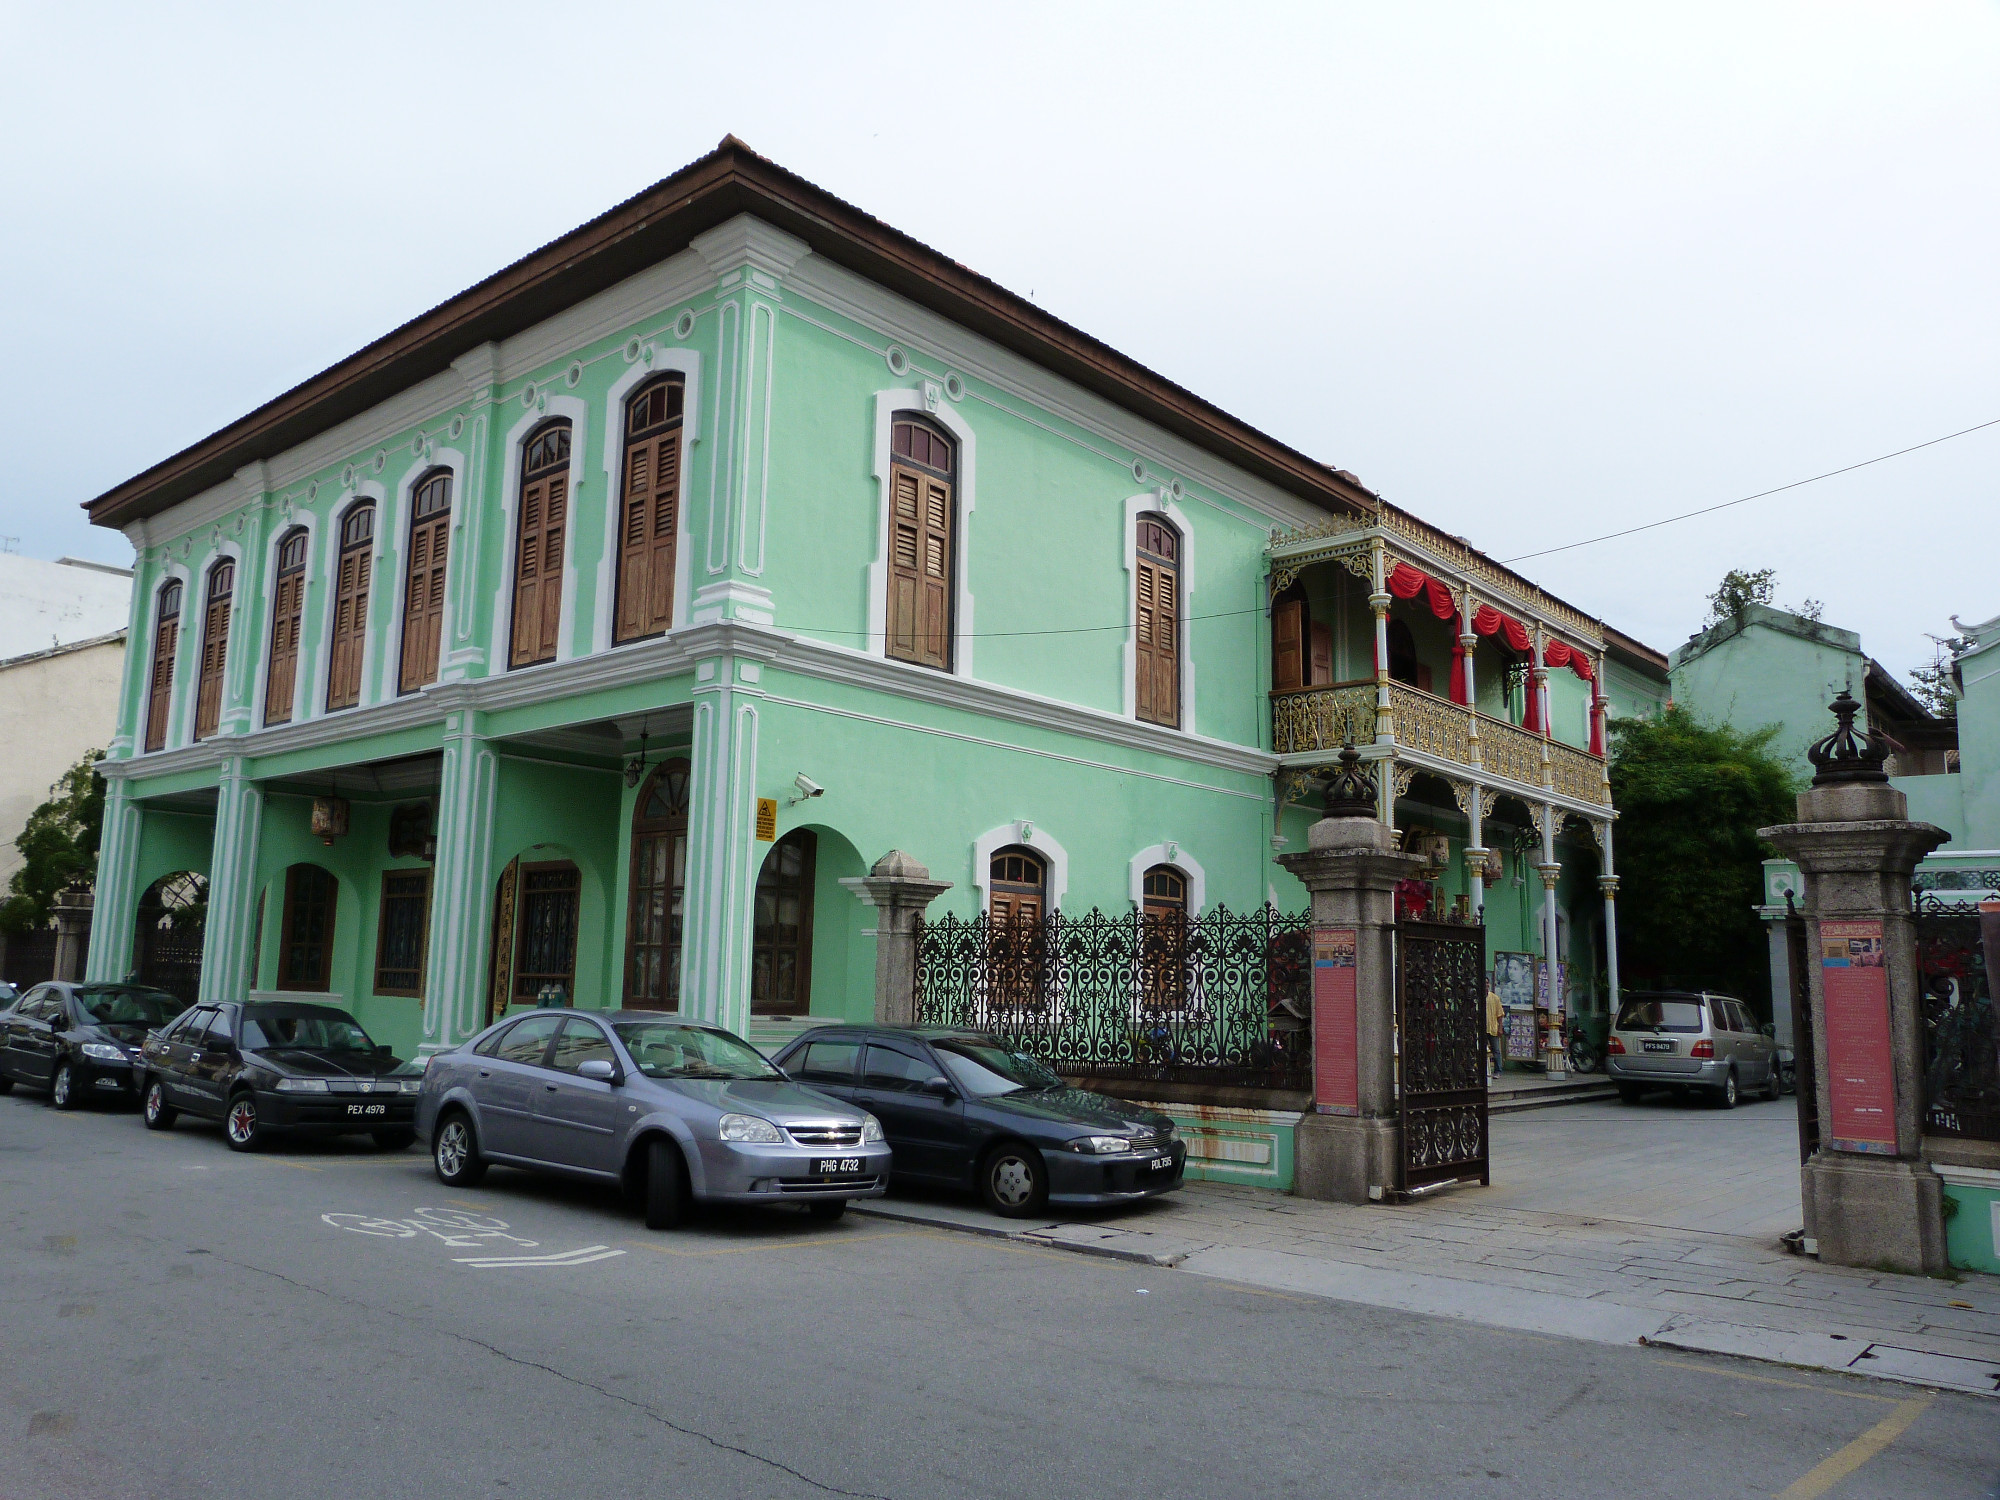 Pinang Peranakan Mansion<br/> <br/>
Museum